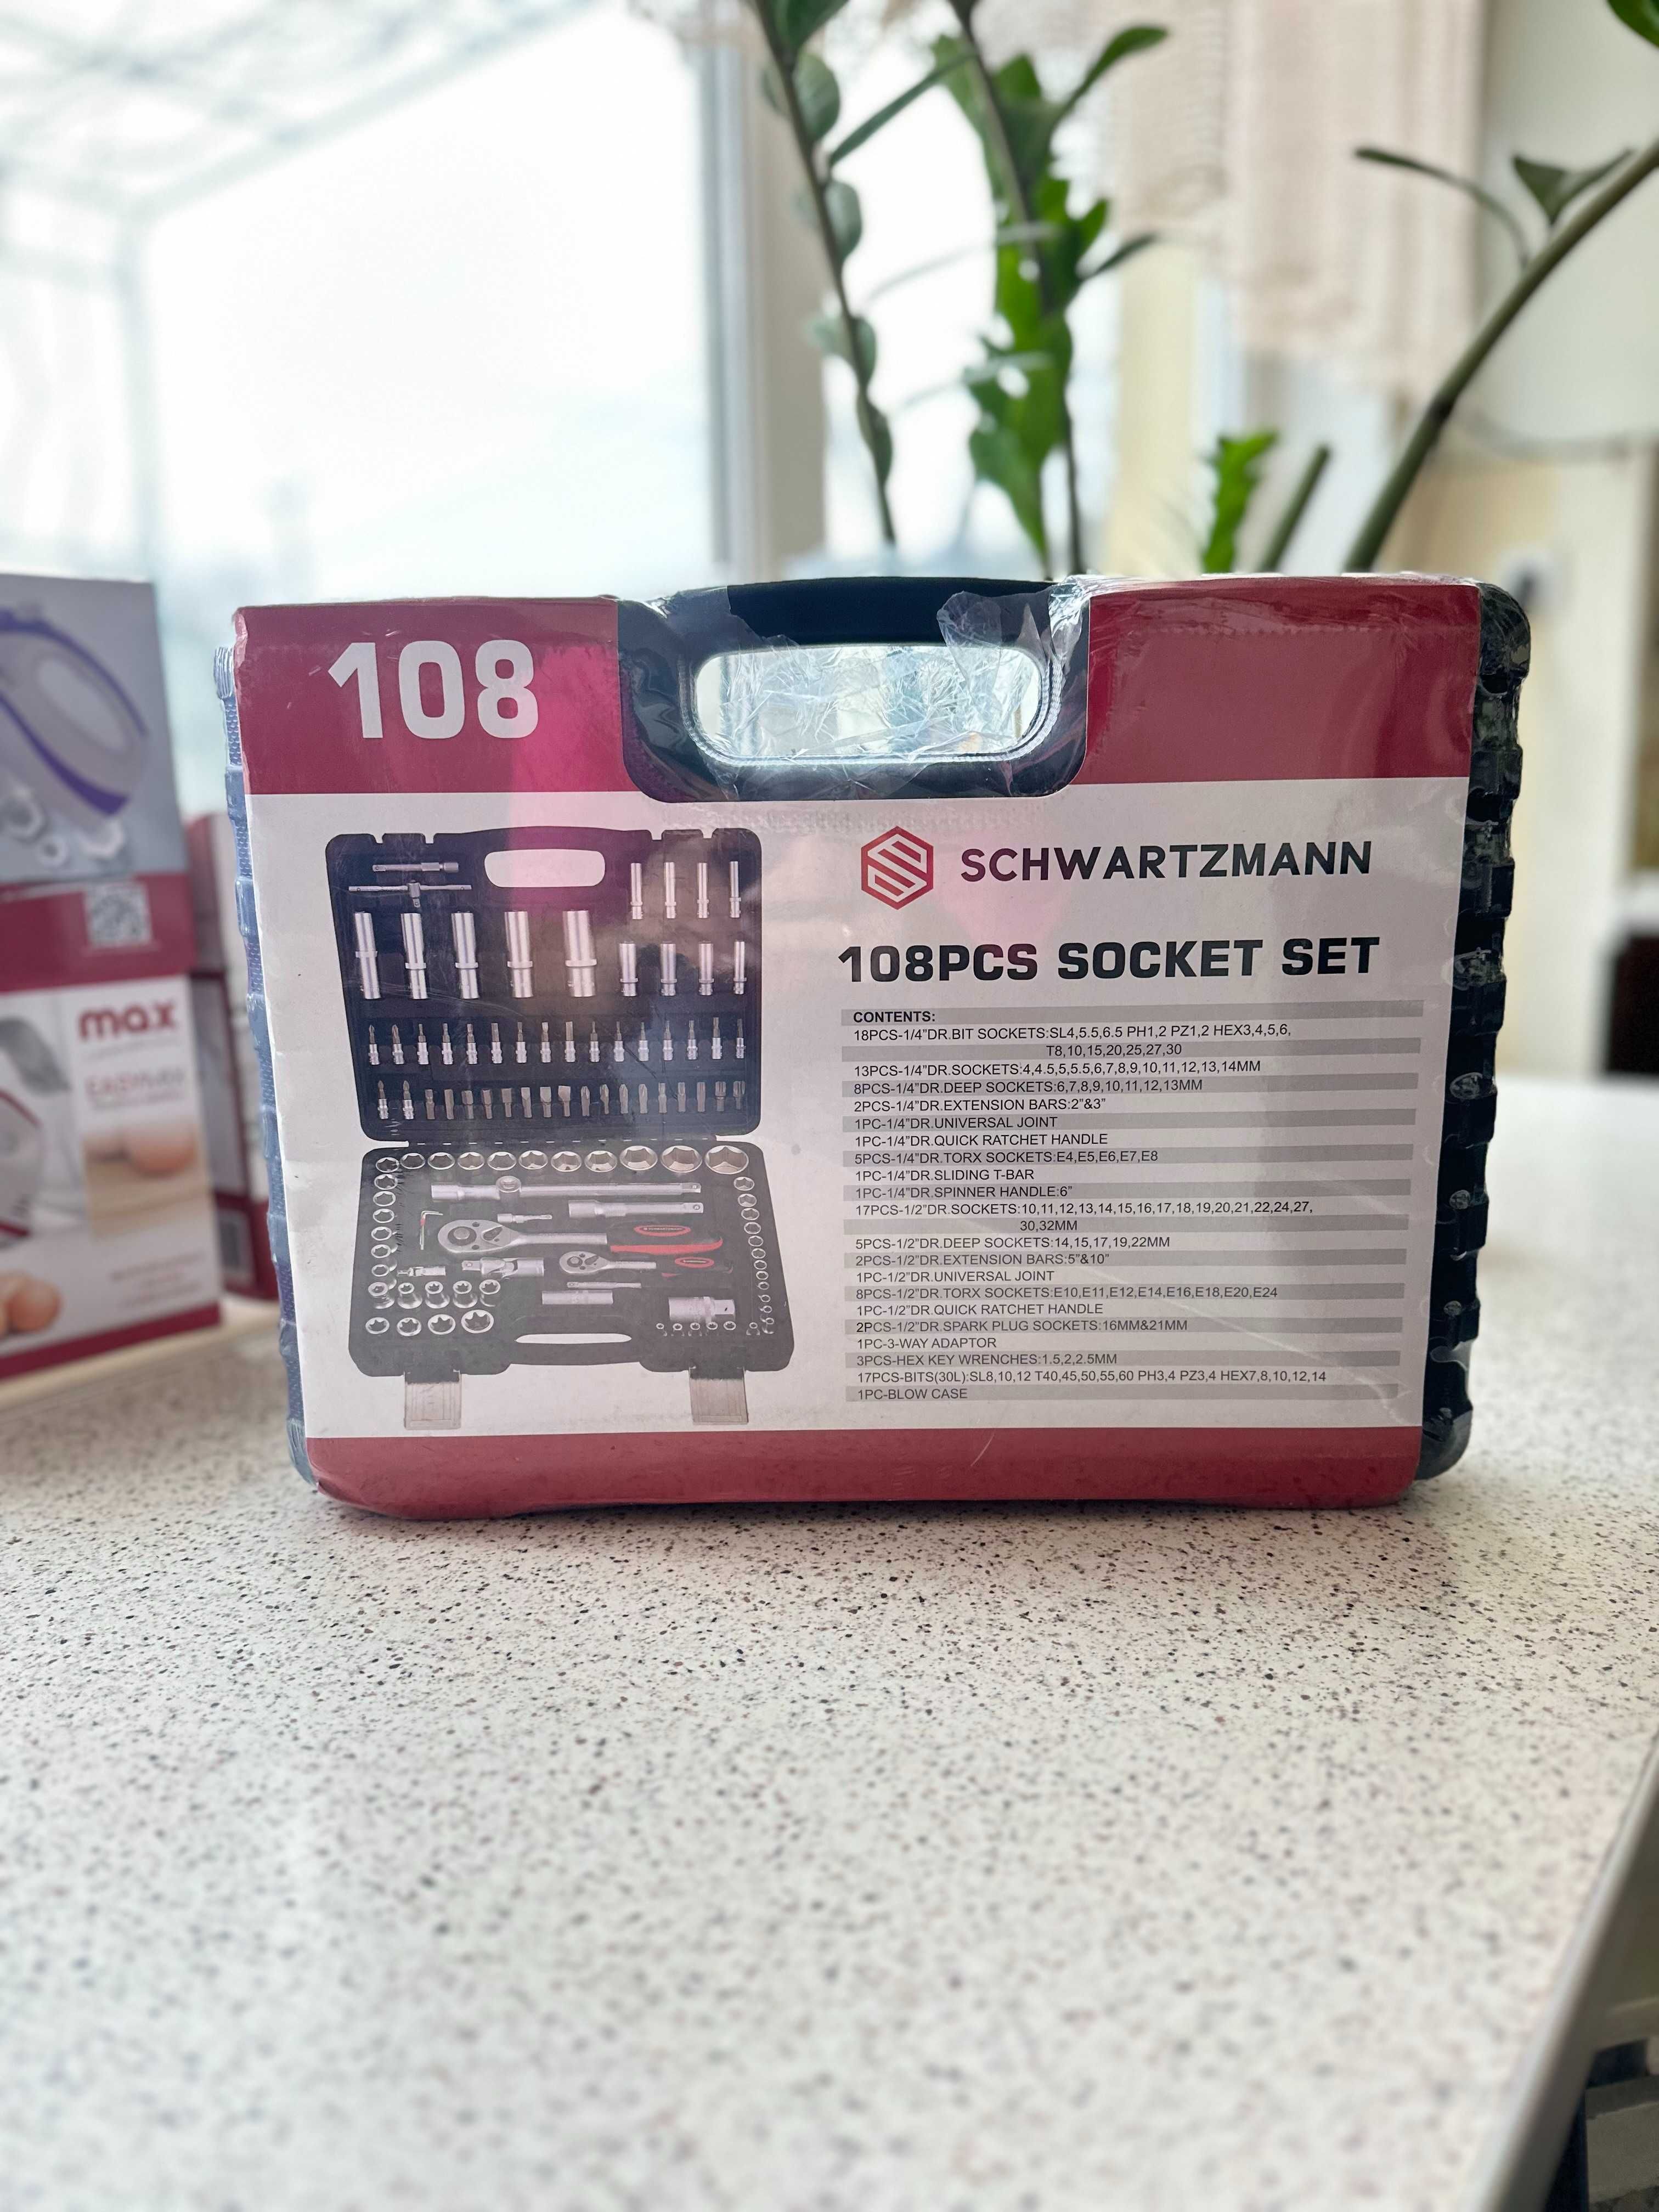 Универсальный набор инструментов Schwarzmann SCH-108PCS, 108 предметов